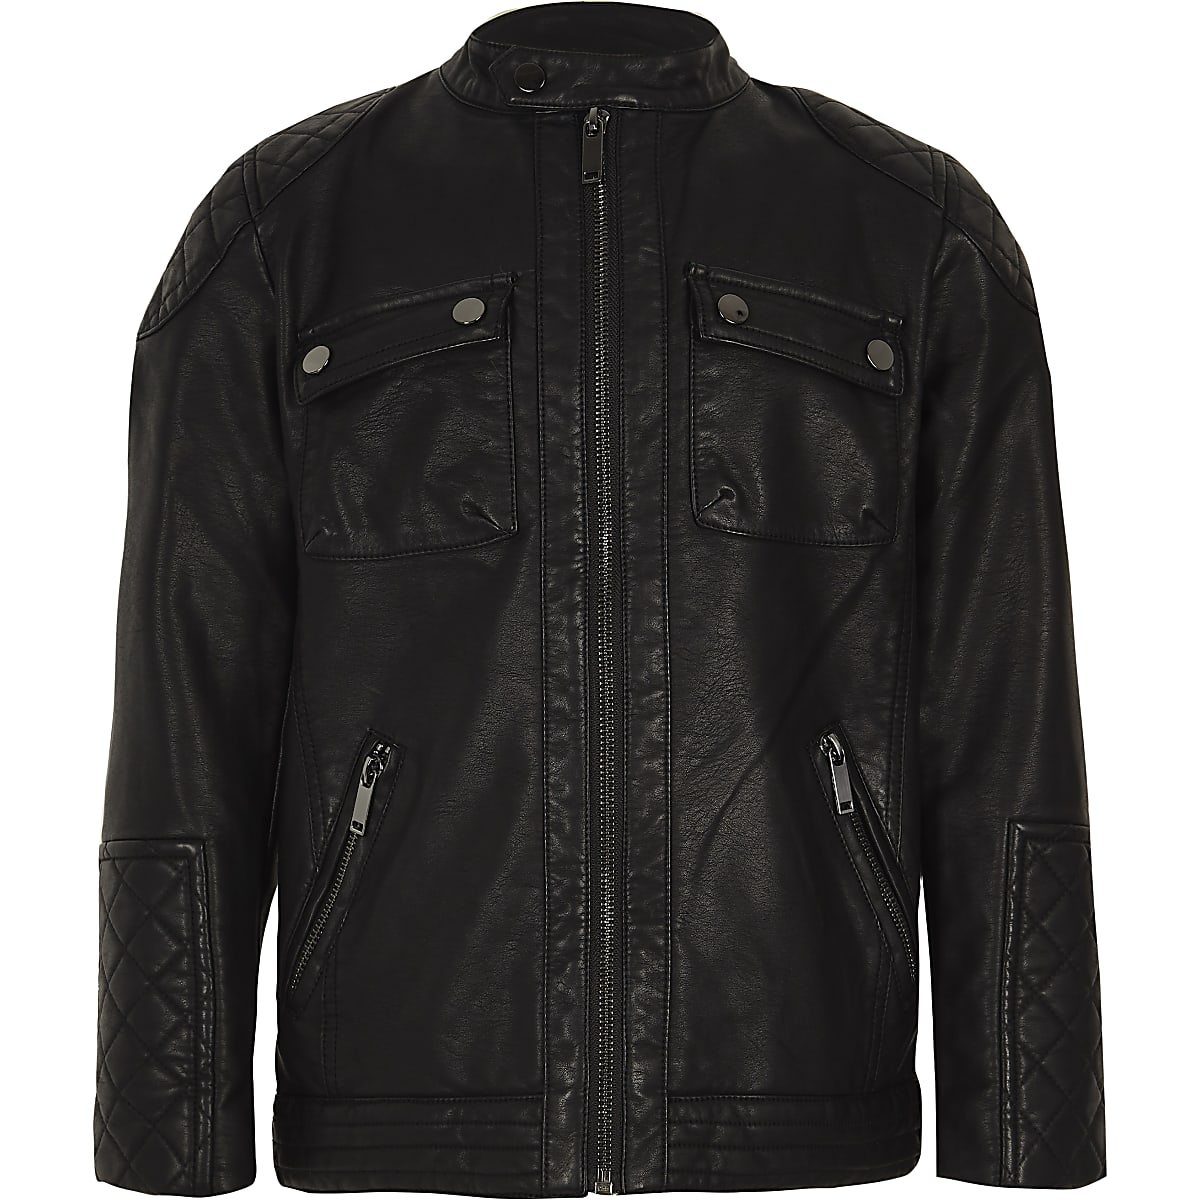 Boys black faux leather racer jacket - Jackets - Coats & Jackets - boys